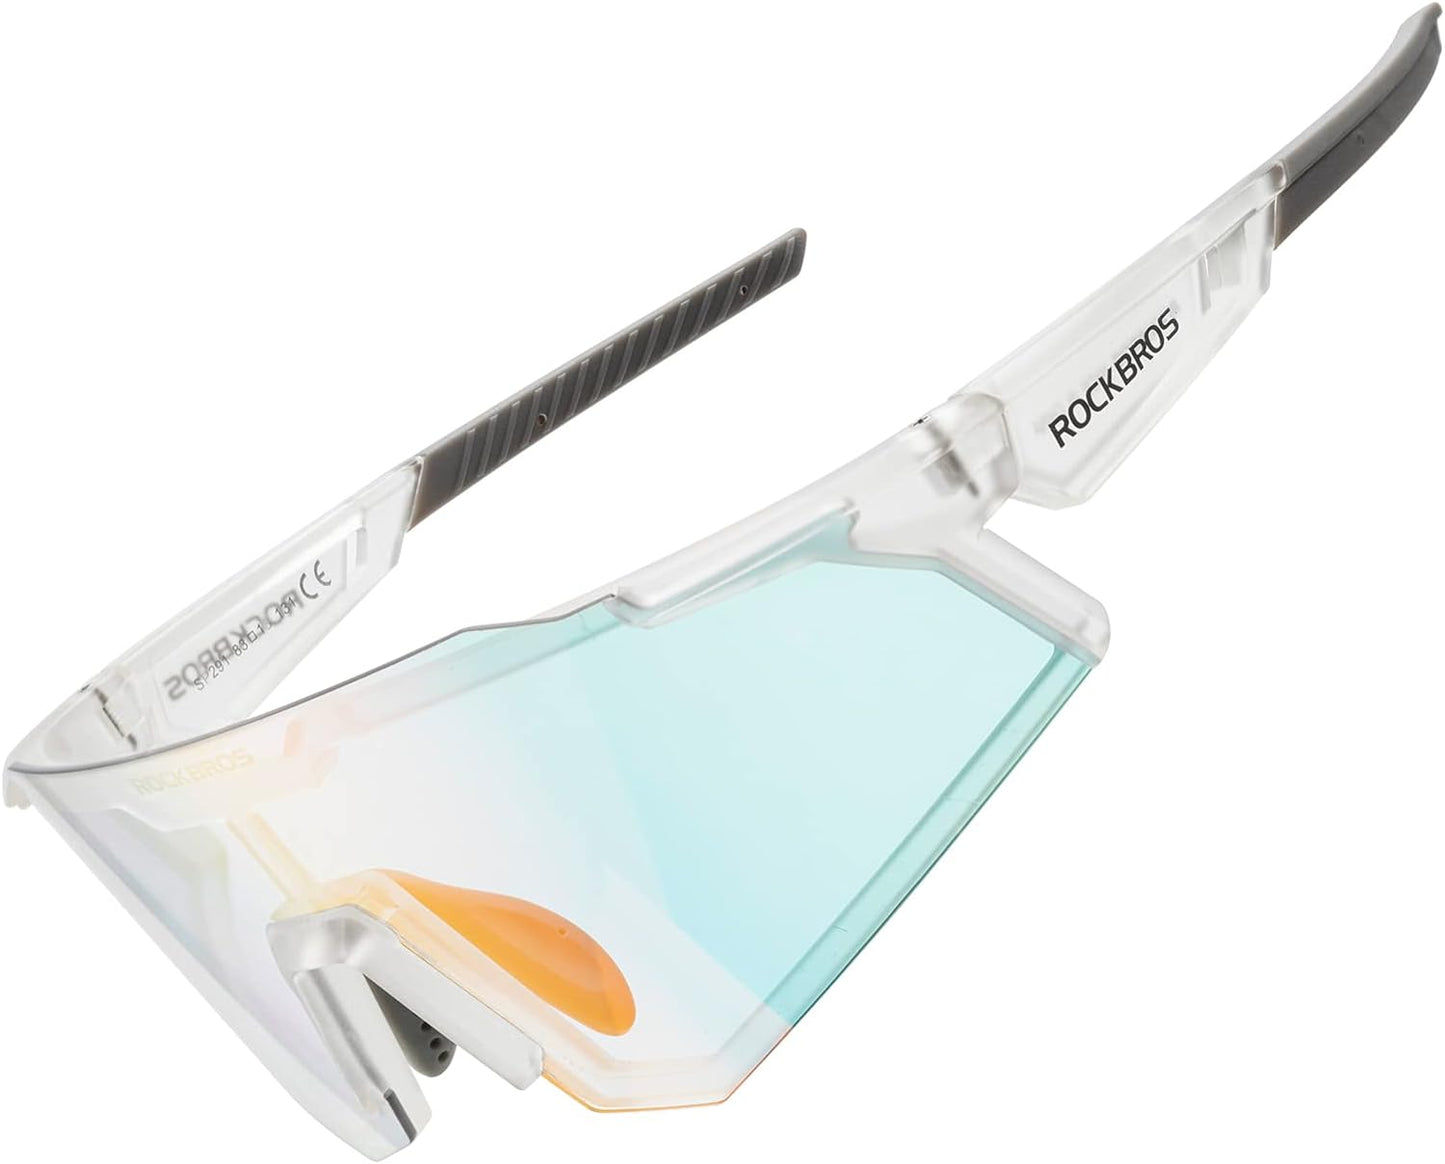 Rockbros 運動眼鏡 偏光眼鏡 半框款 變色鏡 防晒戶外眼鏡